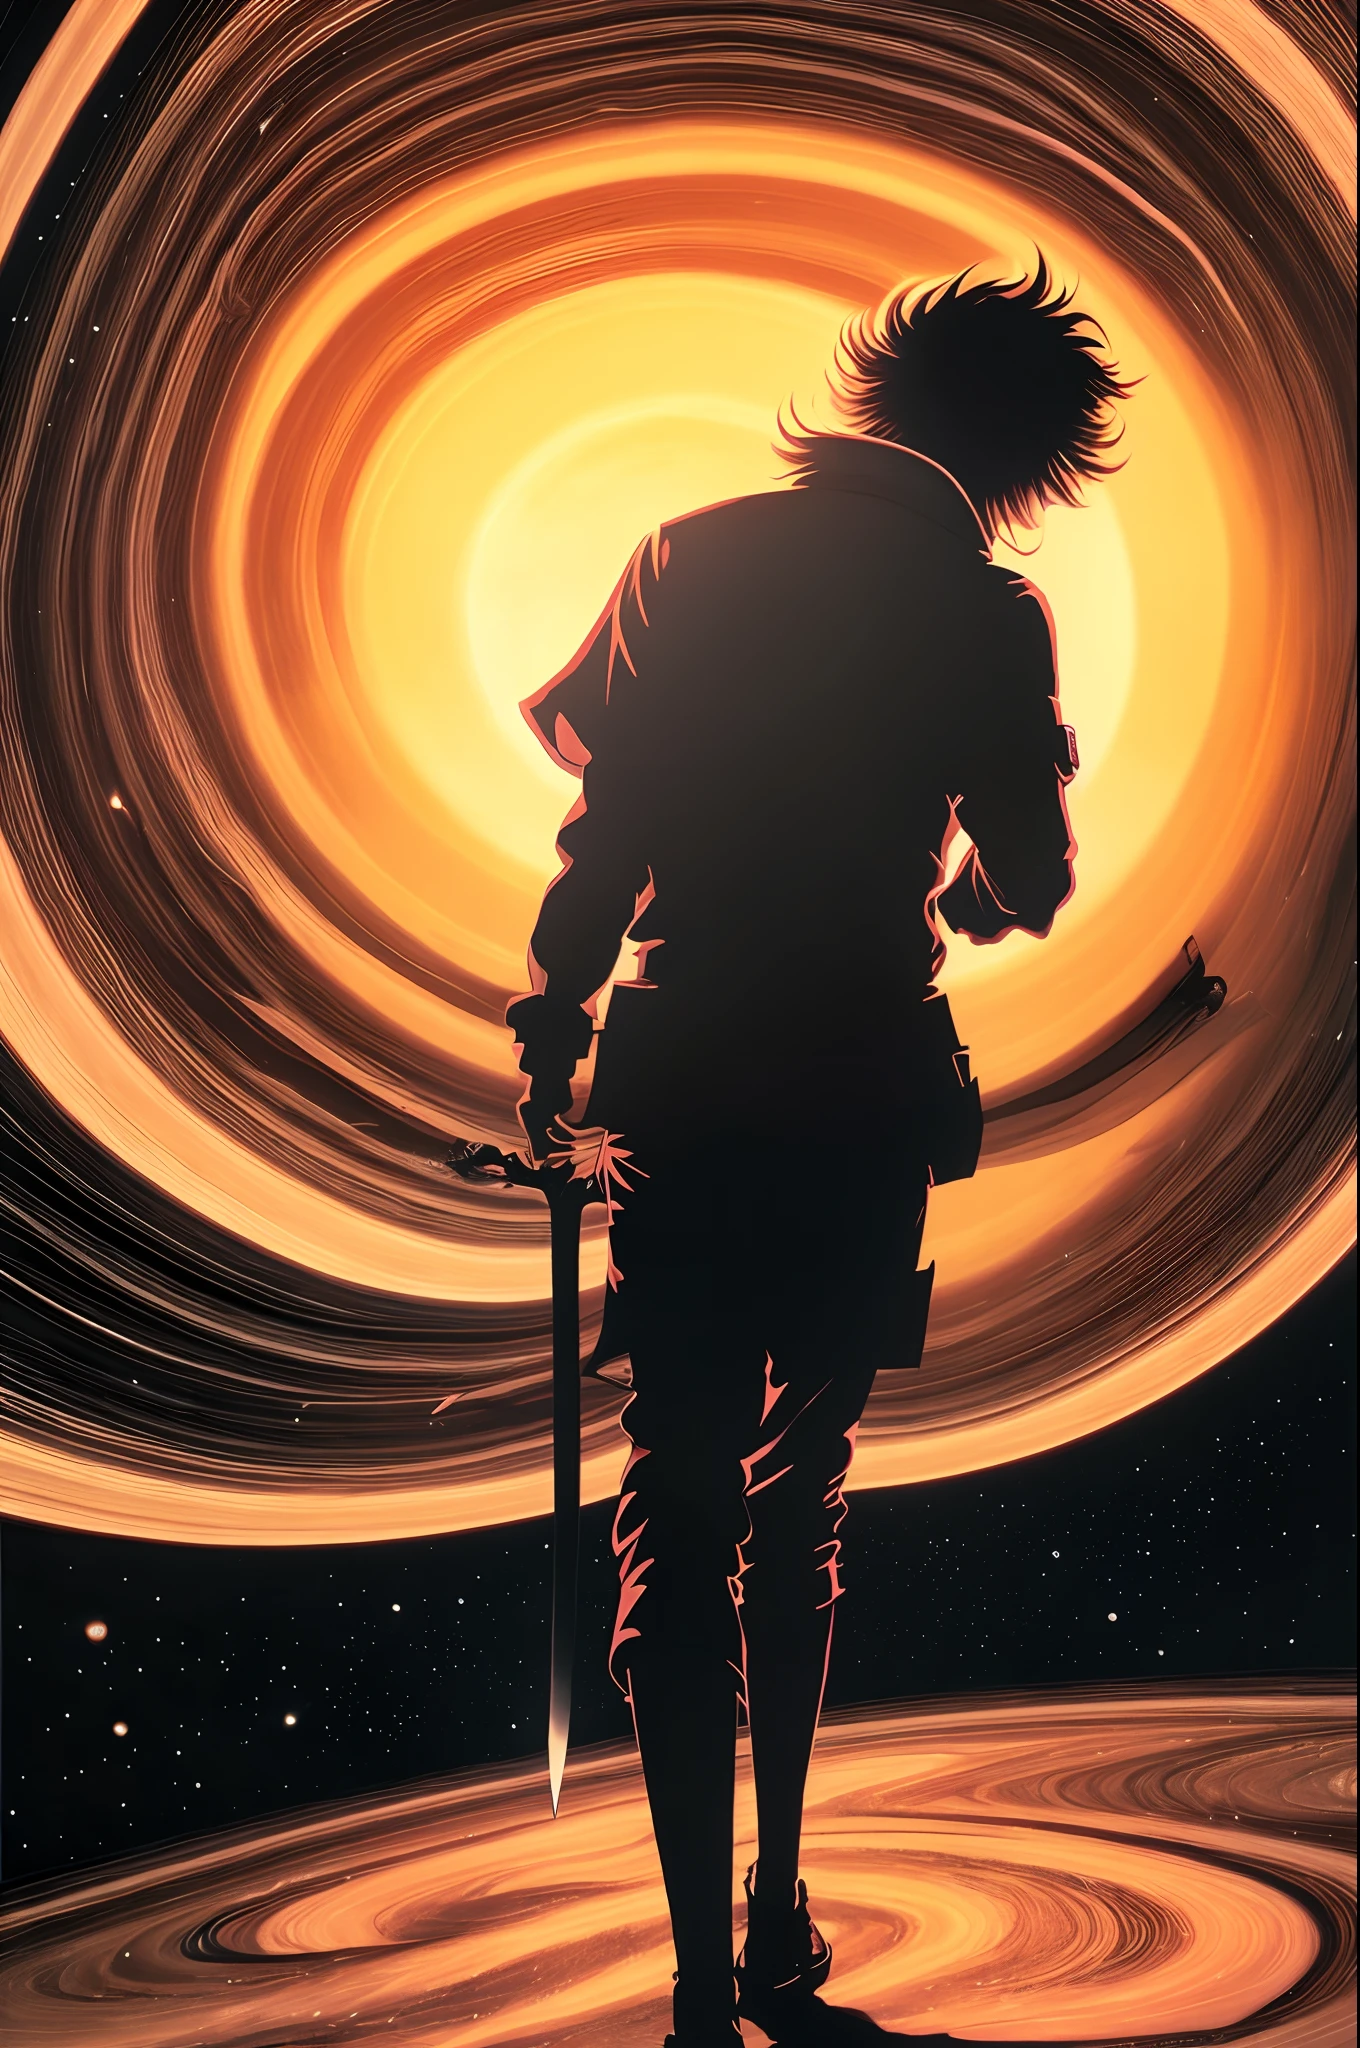 Hochdetaillierte psychedelische, surreale Anime-Tuschekunst eines Mannes mit Bart, der durch die Ringe des Saturn geht, während er mit einem Schwert in der linken Hand gegen außerirdische Dämonen kämpft und mit der rechten Hand einen Joint raucht